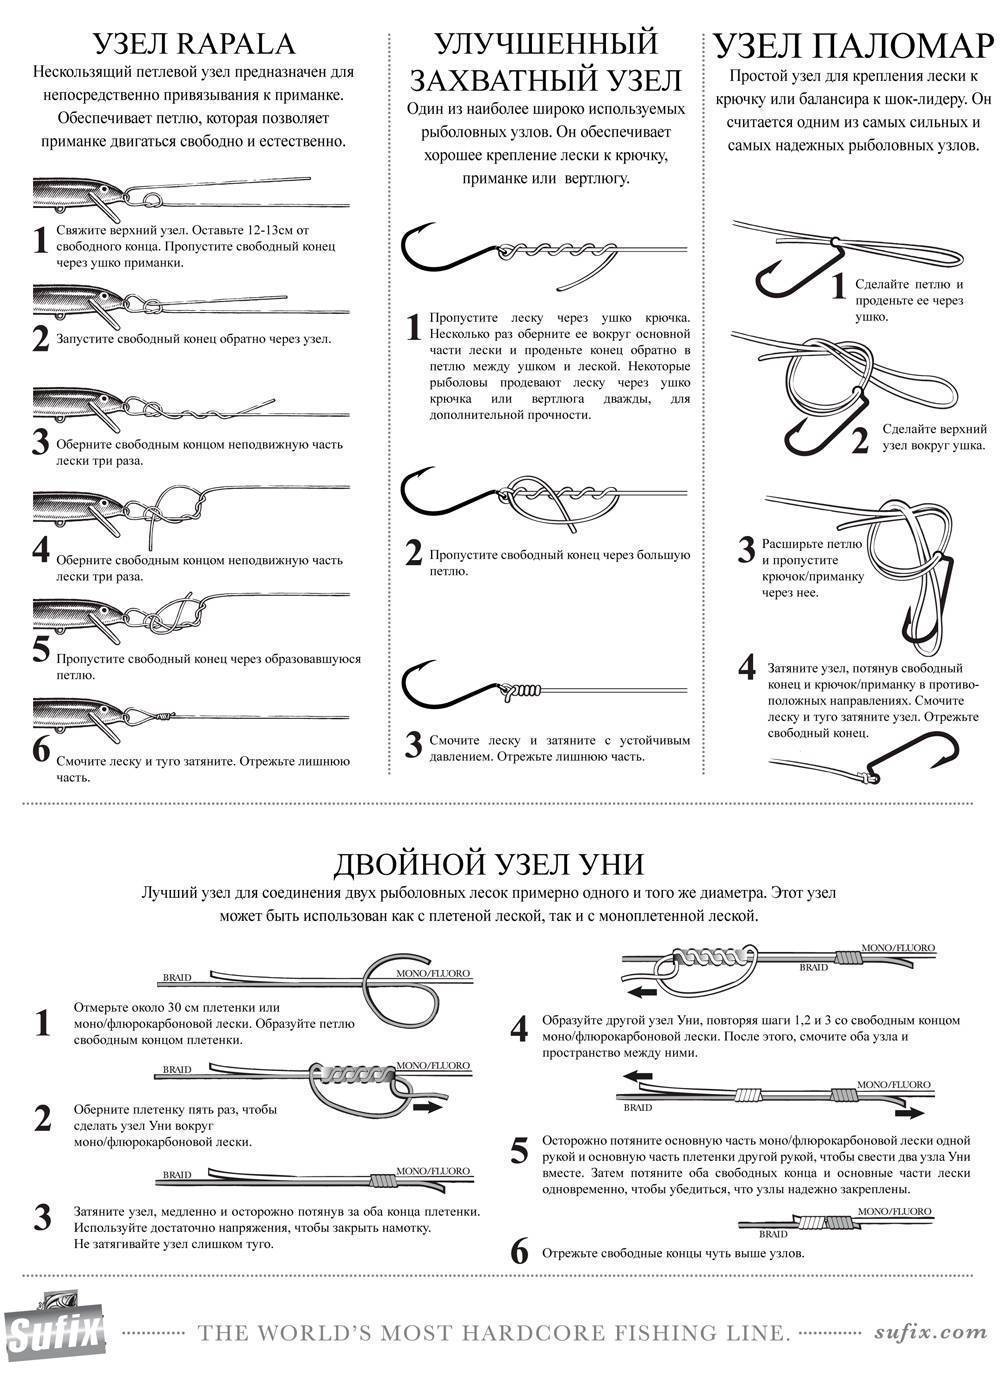 Лучшие рыболовные узлы. рассмотрим узлы, их прочность и технику вязания.